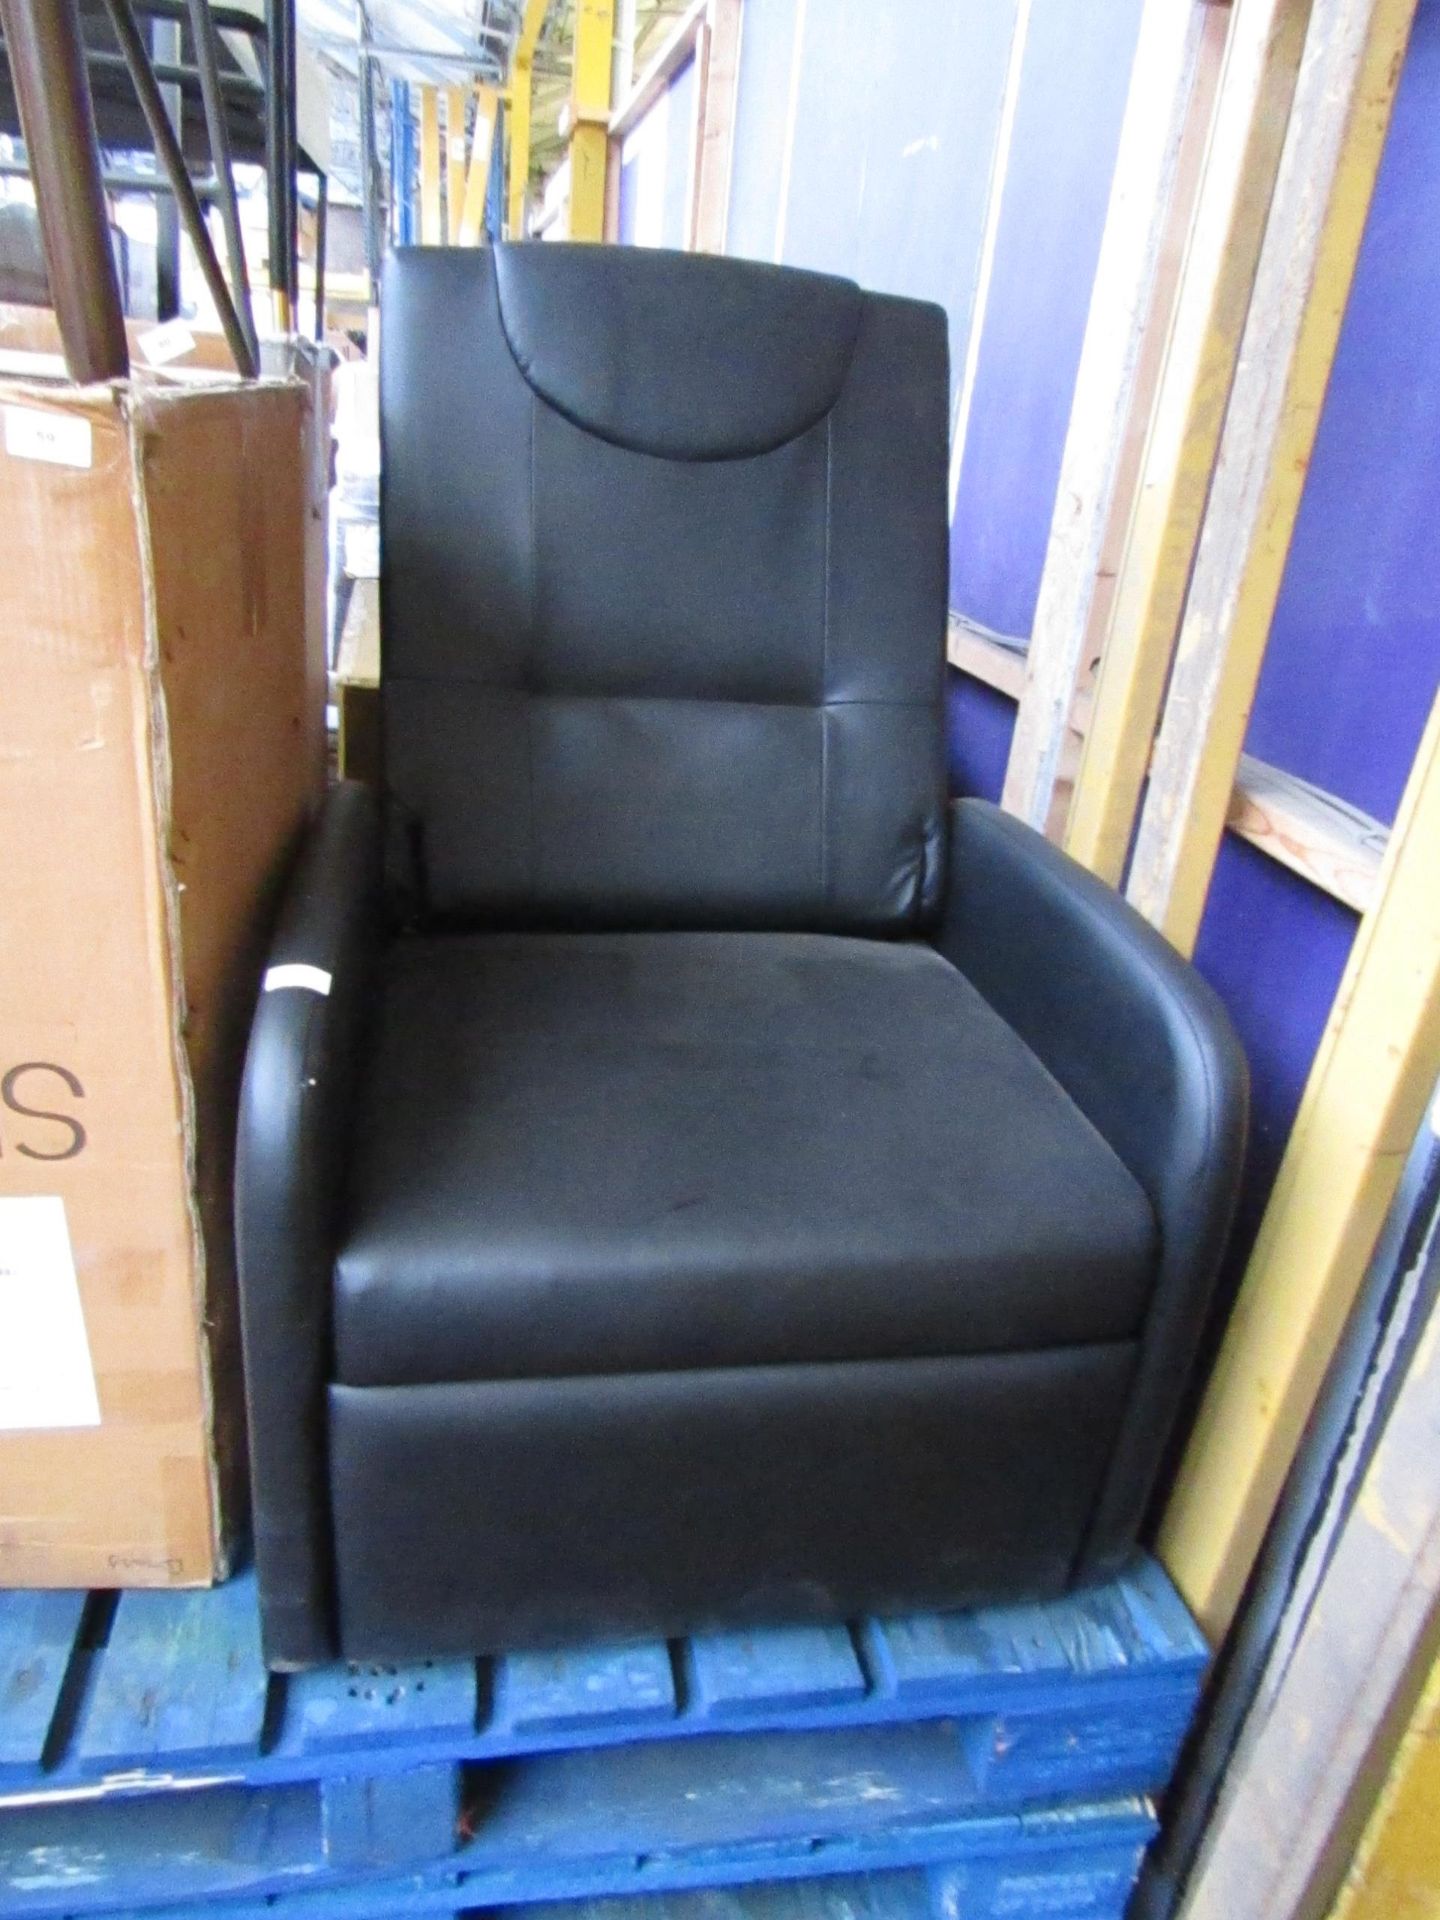 Black foldable back rest chair, no major damage.